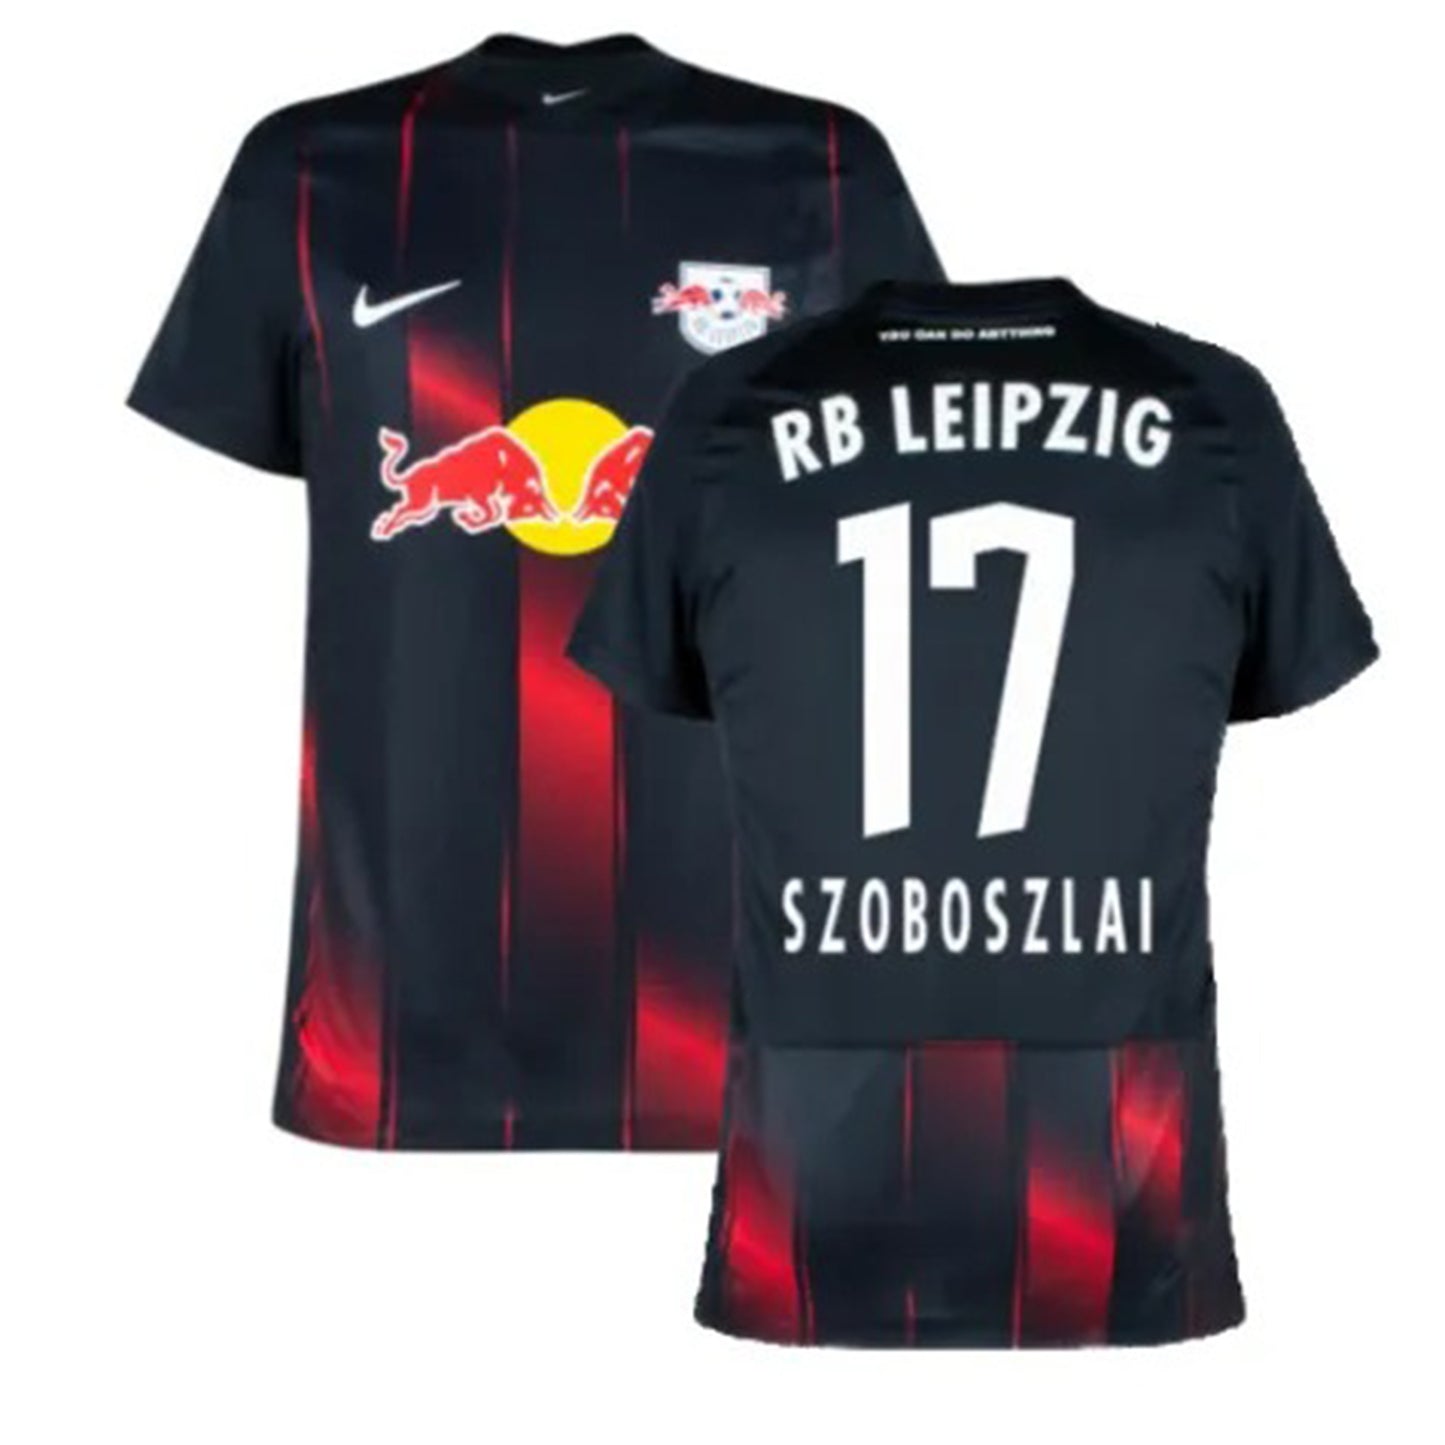 Dominik Szoboszlai RB Leipzig 17 Jersey